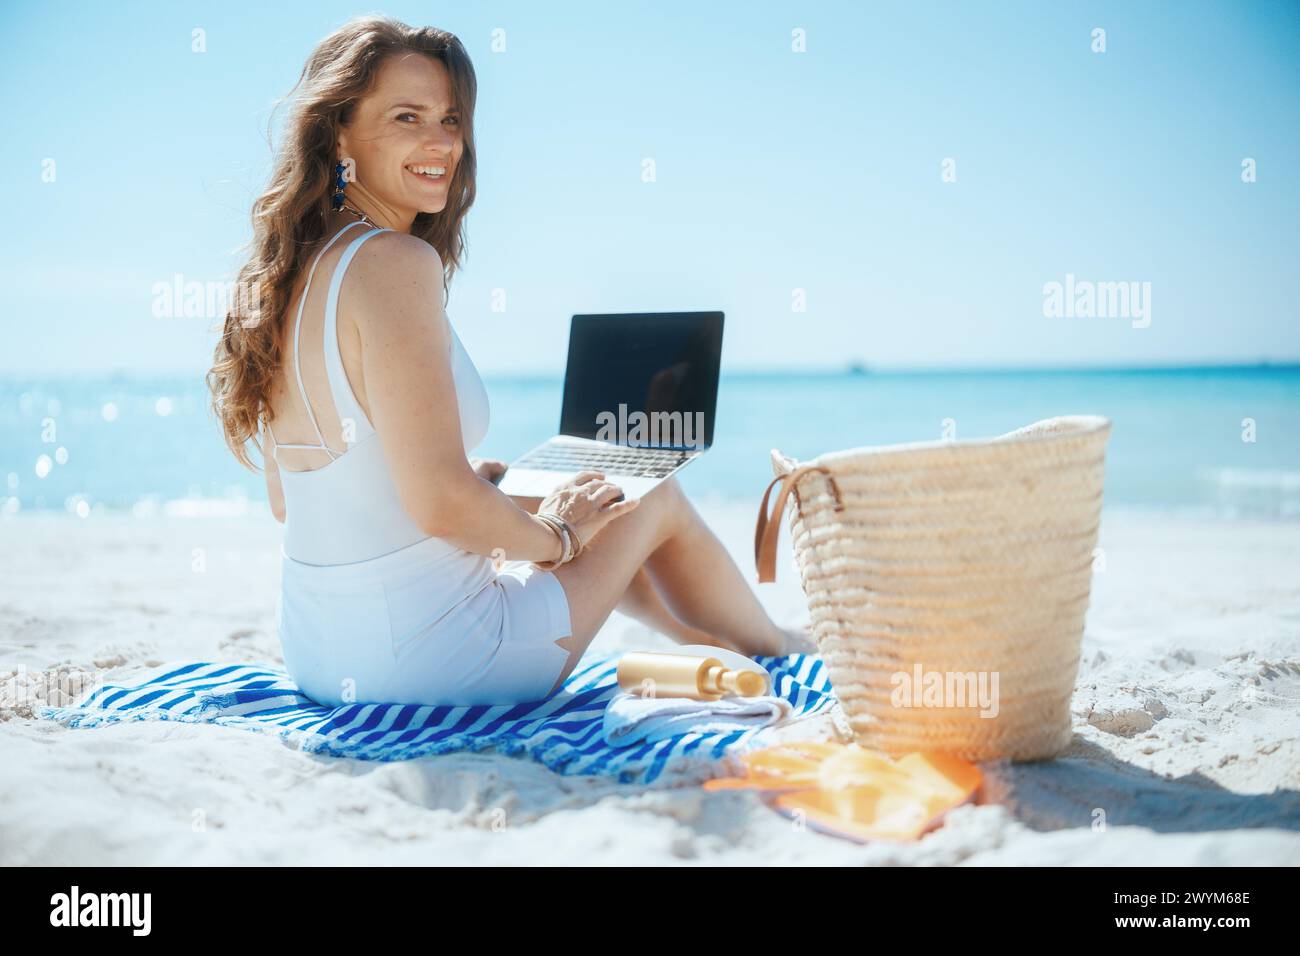 Glückliche, elegante Frau an der Meeresküste mit Strohtasche, leerem Laptop-Bildschirm und gestreiftem Handtuch. Stockfoto